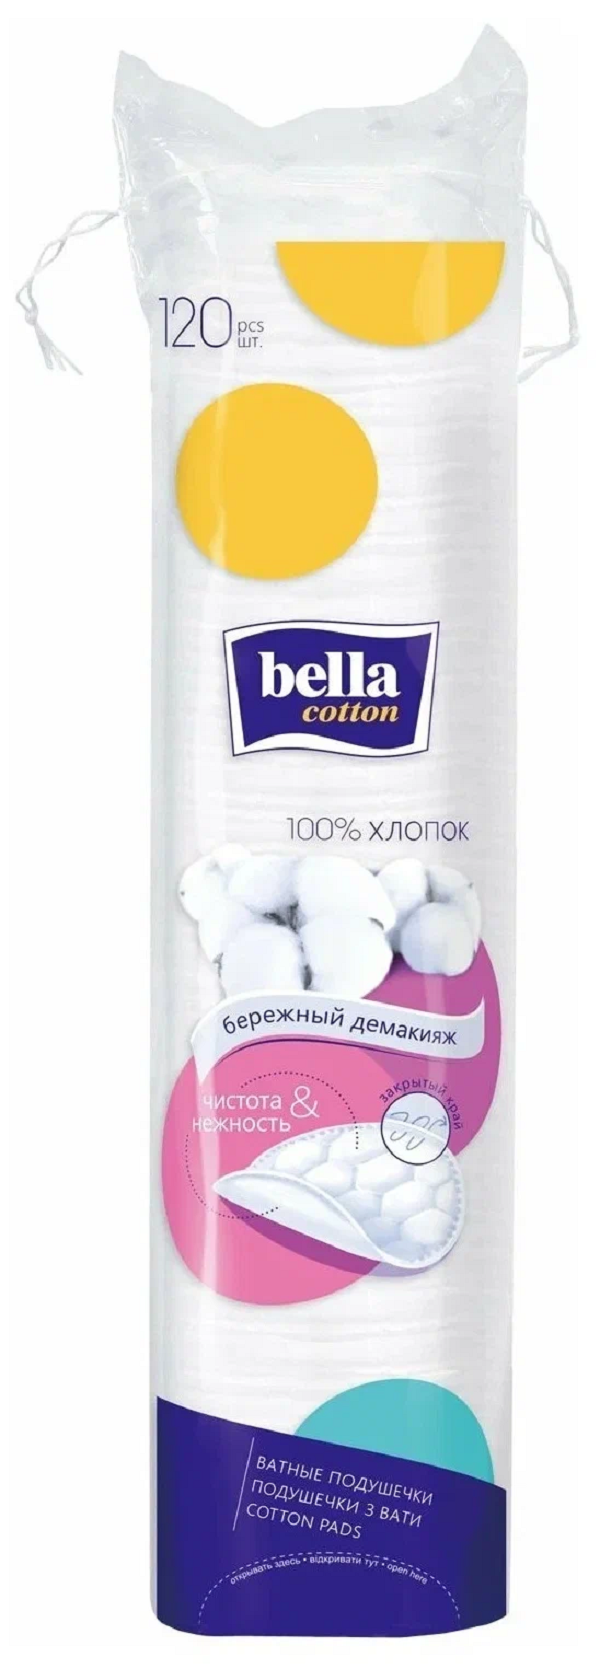 Диски ватные Bella Cotton хлопок, 120 шт. j cat beauty ватные диски для снятия макияжа gone finity